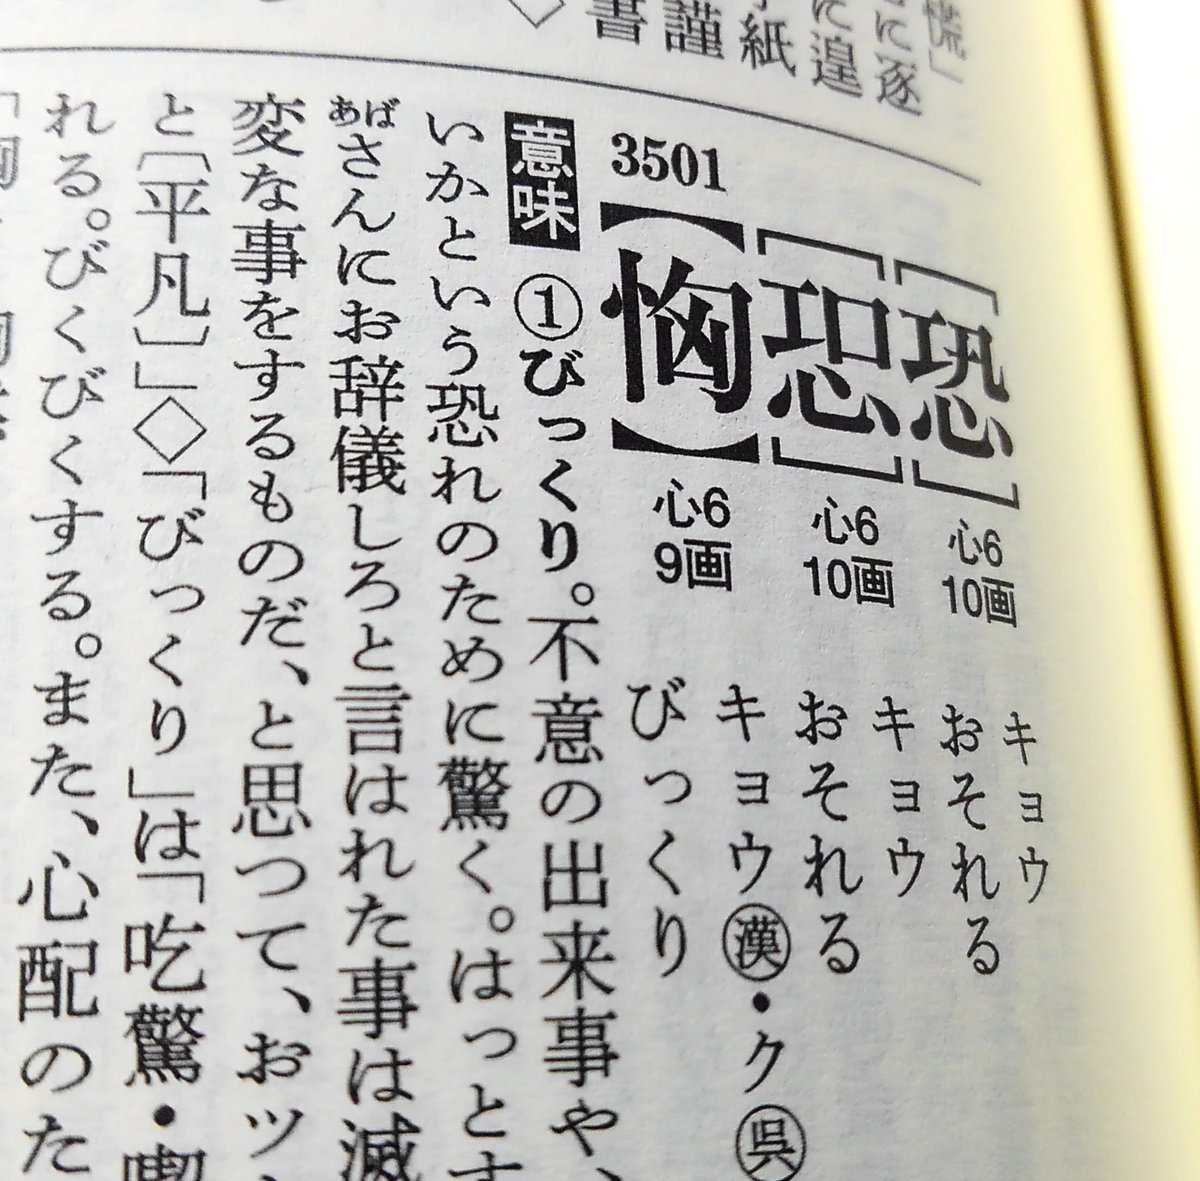 拾萬字鏡 Twitterissa びっくり と読む漢字 1枚目は享保17年 1732 の 筆海俗字指南車 から 江戸時代にはそう読まれていたという ことか